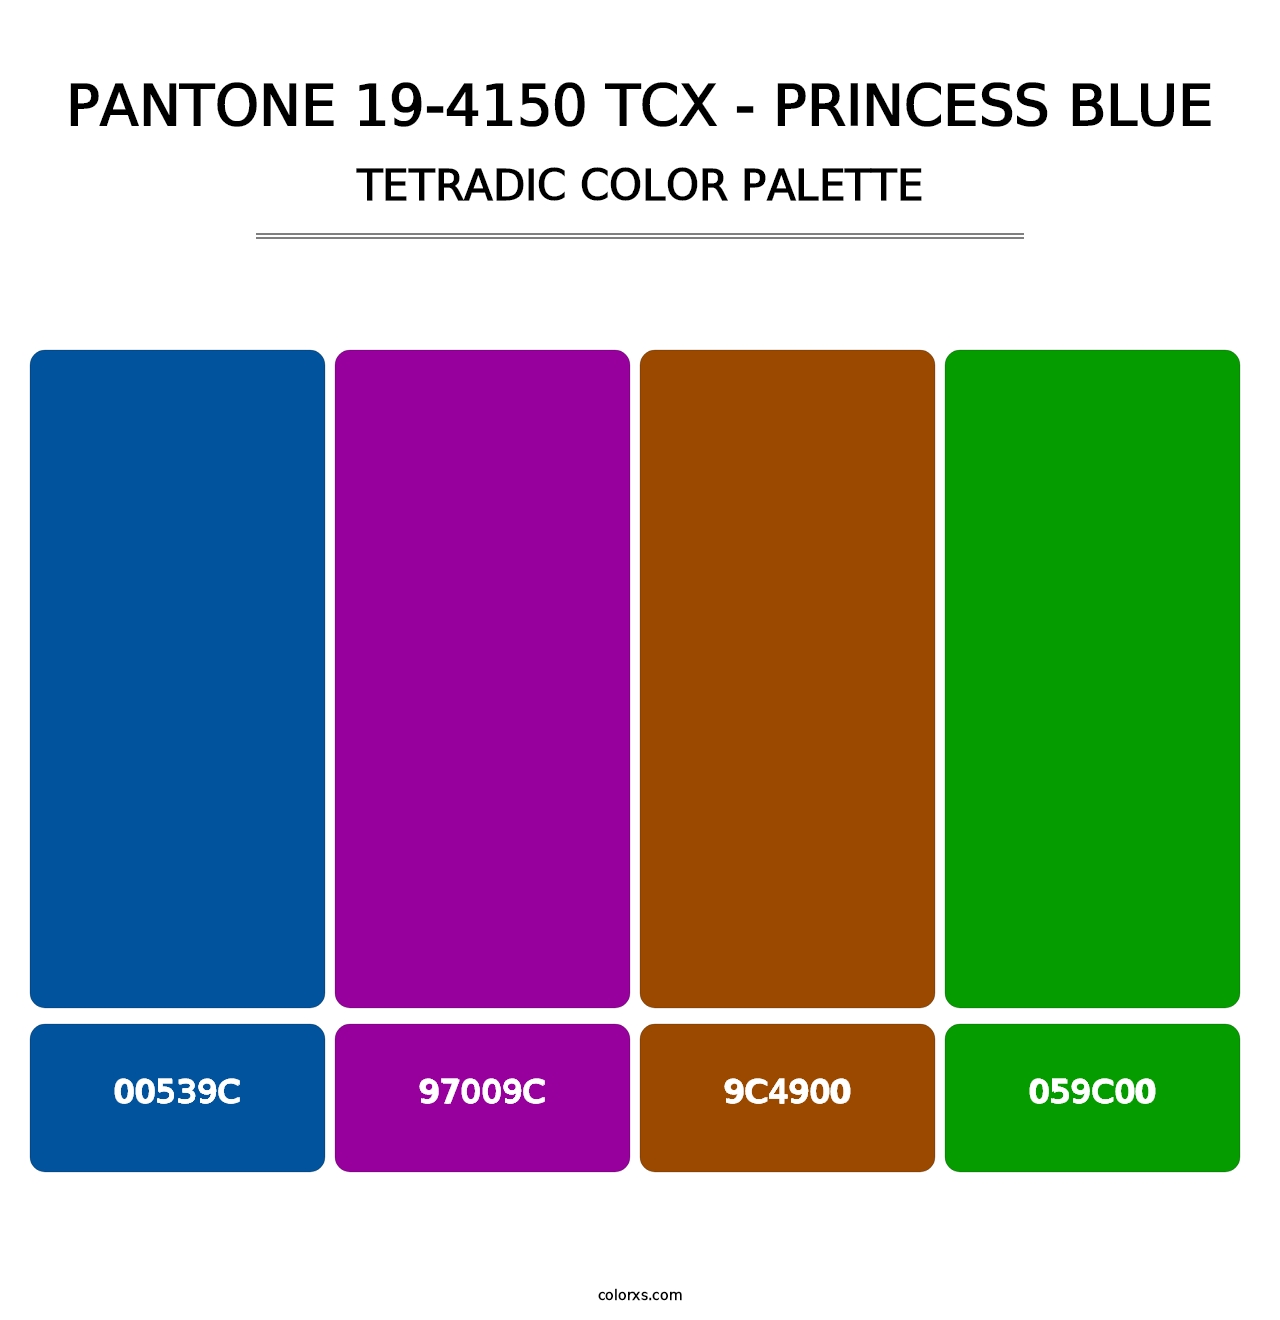 PANTONE 19-4150 TCX - Princess Blue - Tetradic Color Palette